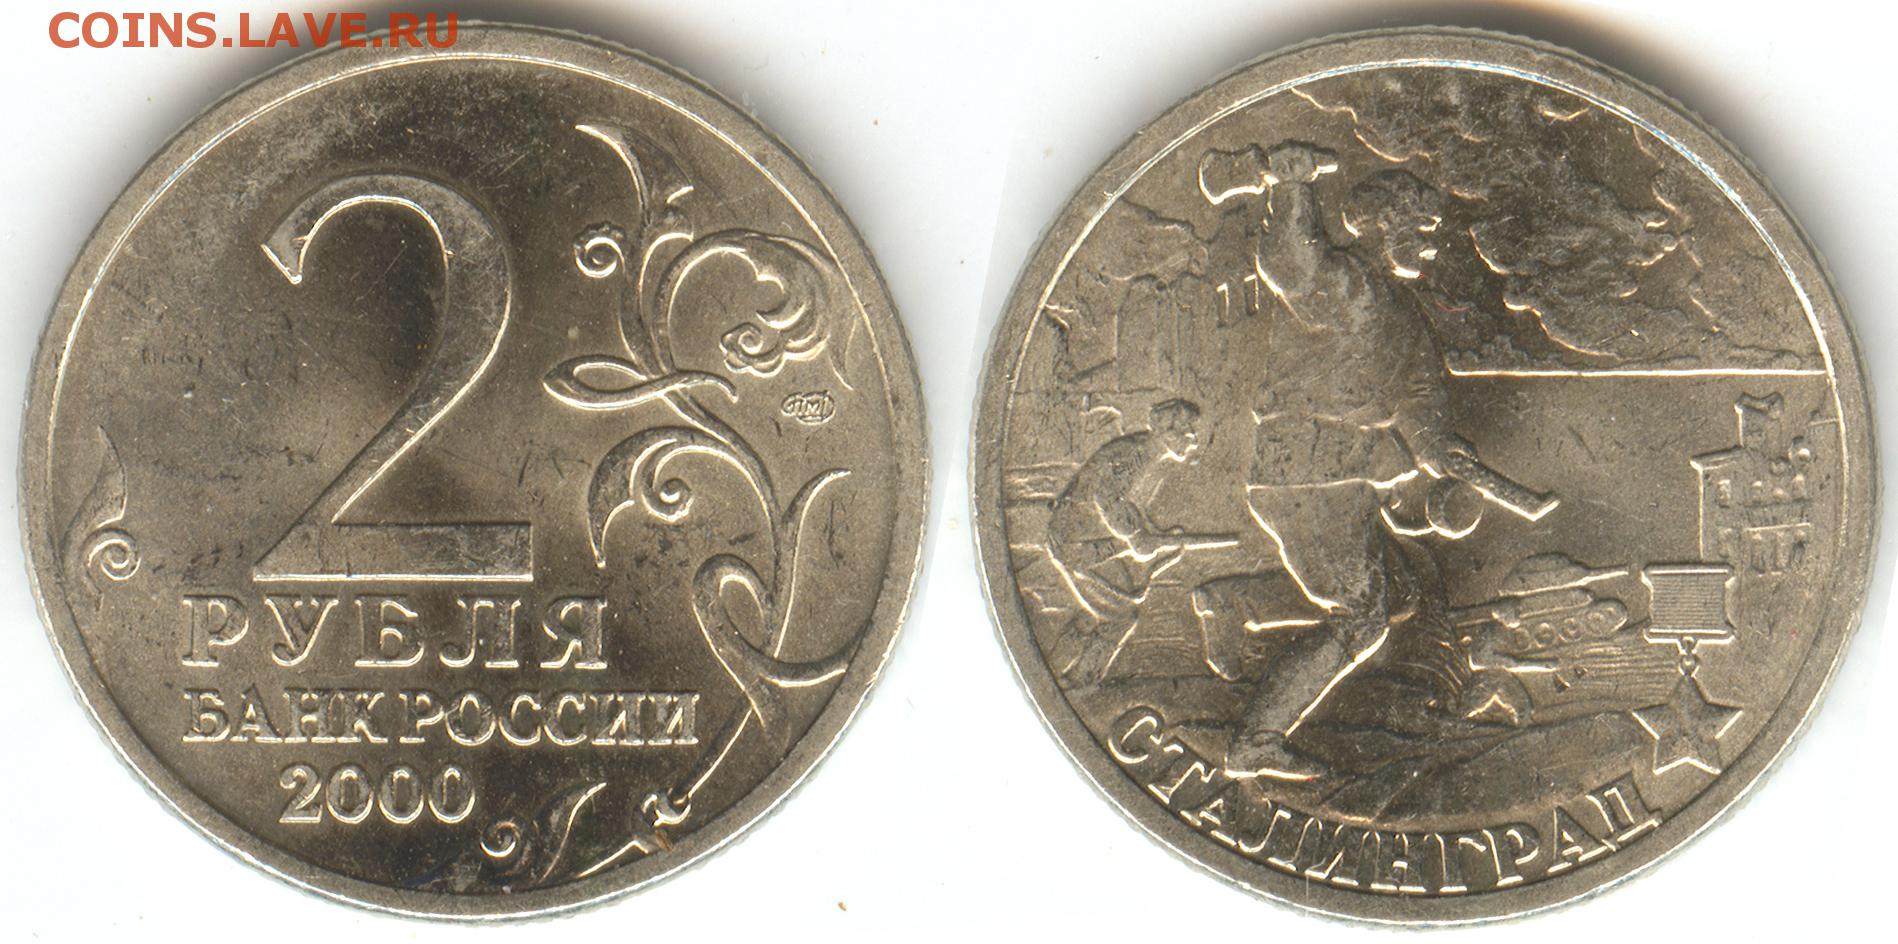 Стоимость монеты 2 рубля 2000 год. Сталинград монета Россия 2000 год 2 рубля нейзильбер VF. 2 Рубля 2000 Ленинград. 2 Рубля 2000 года. Юбилейная монета 2 рубля 2000 года.